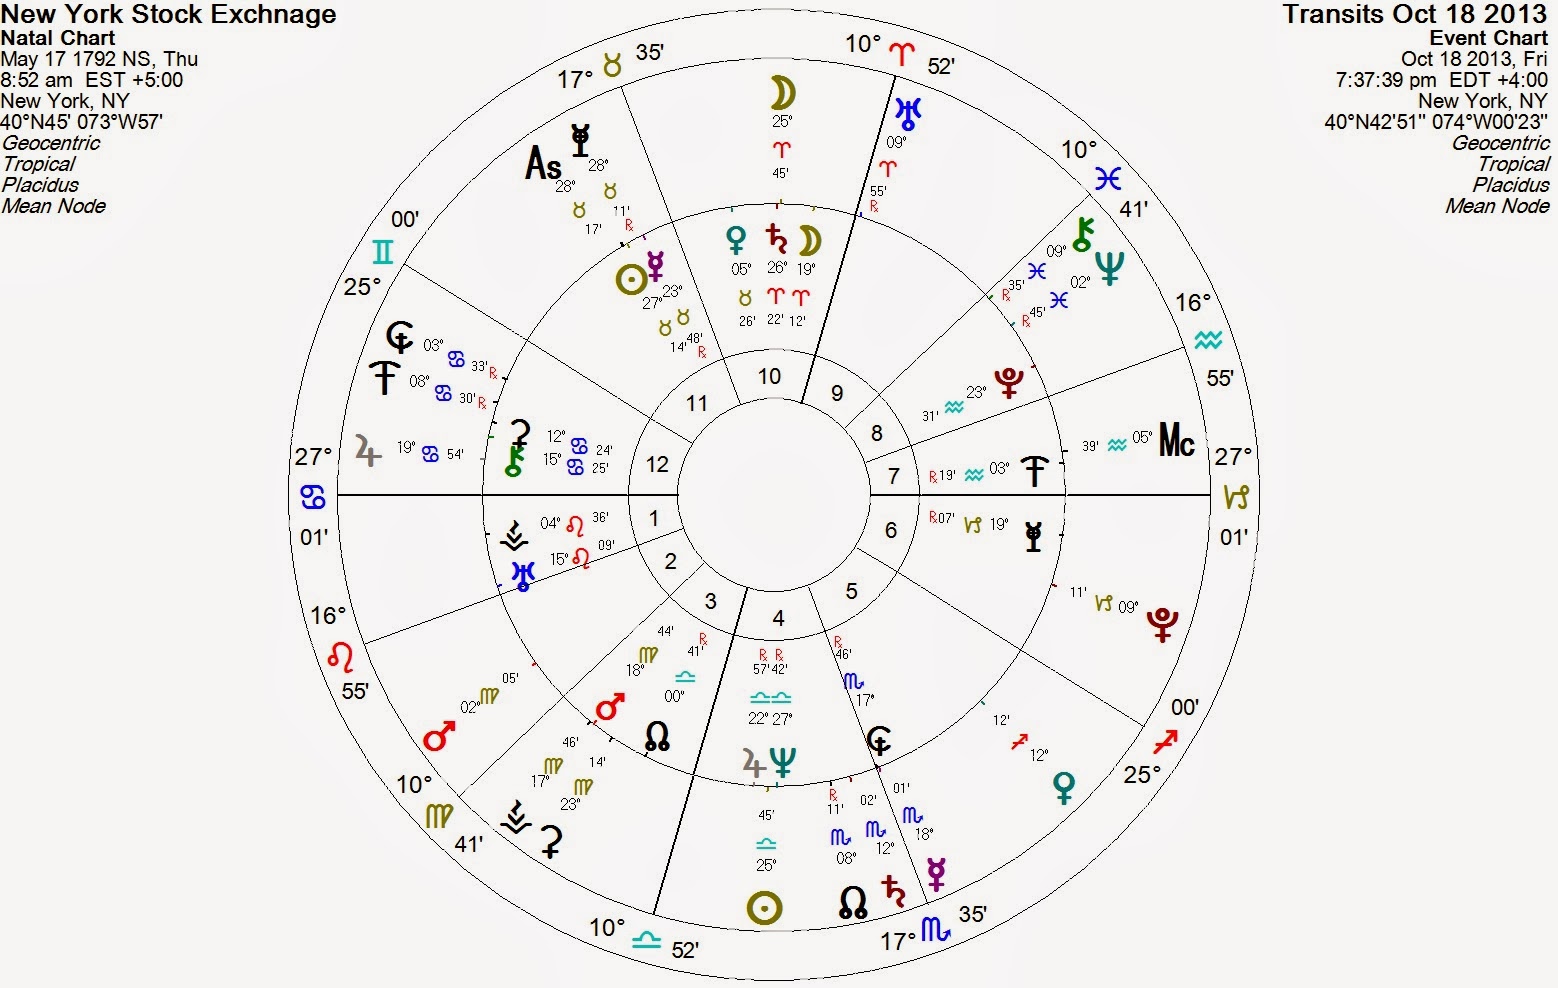 Wheel Exchange Chart